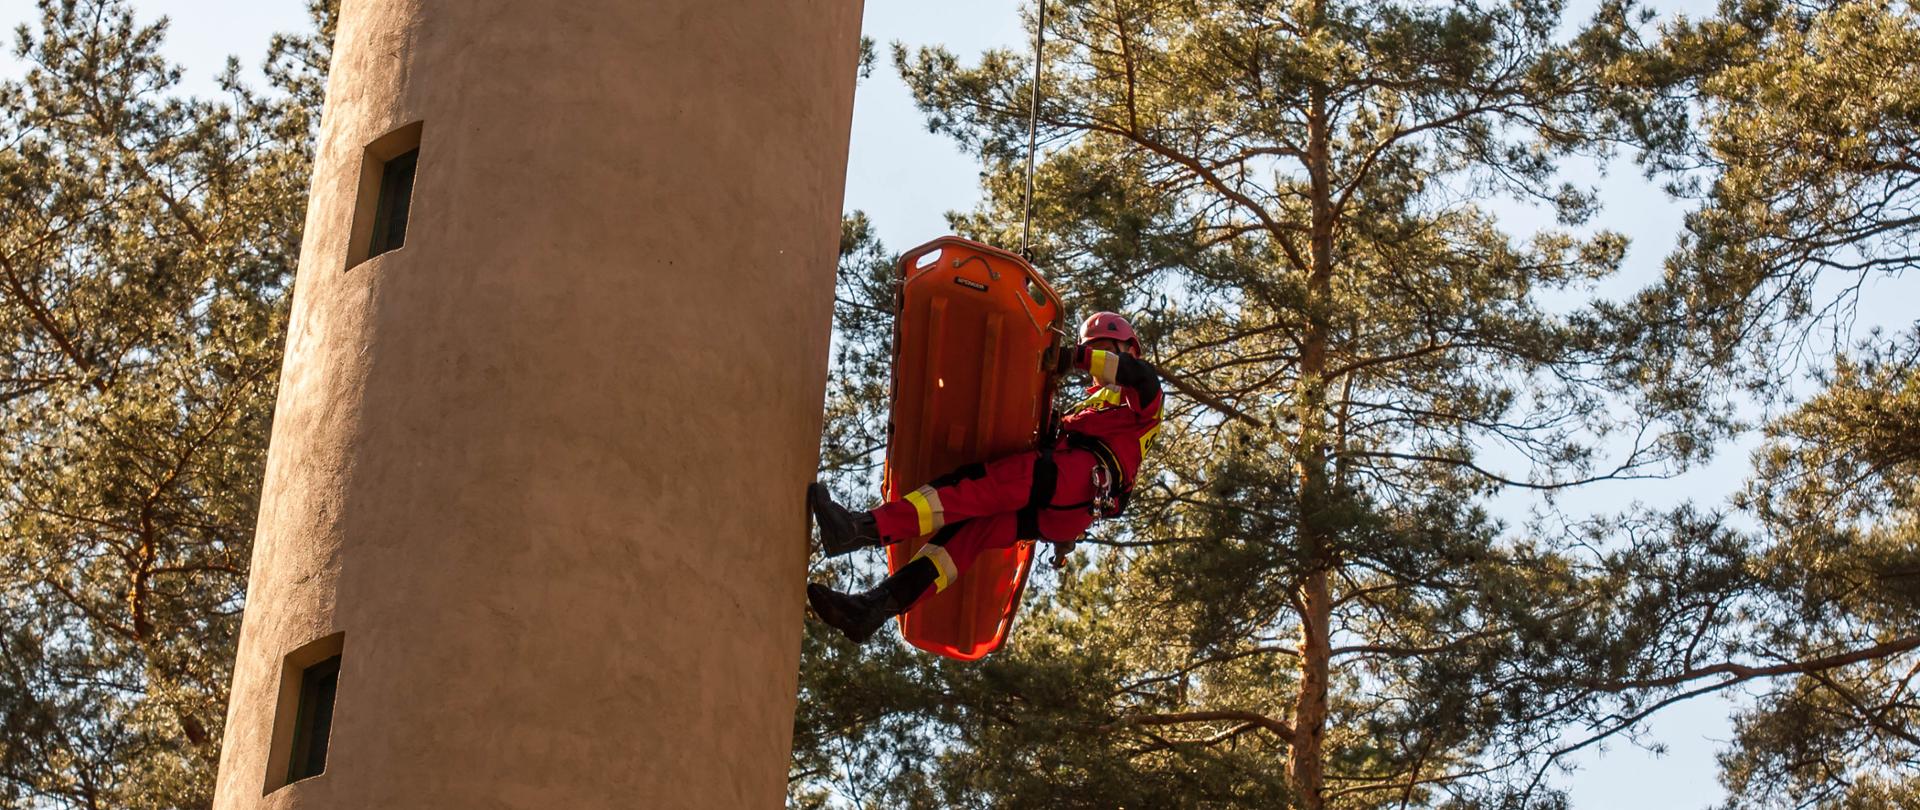 Na zdjęciu widoczny strażak Specjalistycznej Grupy Ratownictwa Wysokościowego "Głuchołazy" będący na wysokości połowy wieży dostrzegalni pożarowej (przy pomocy technik linowych) z podwieszonym na koszu ratowniczym koloru pomarańczowego poszkodowanym (manekin). Strażak ubrany w kombinezon koloru czerwonego, kask koloru czerwonego oraz rękawiczki. W tle widoczne korony drzew/